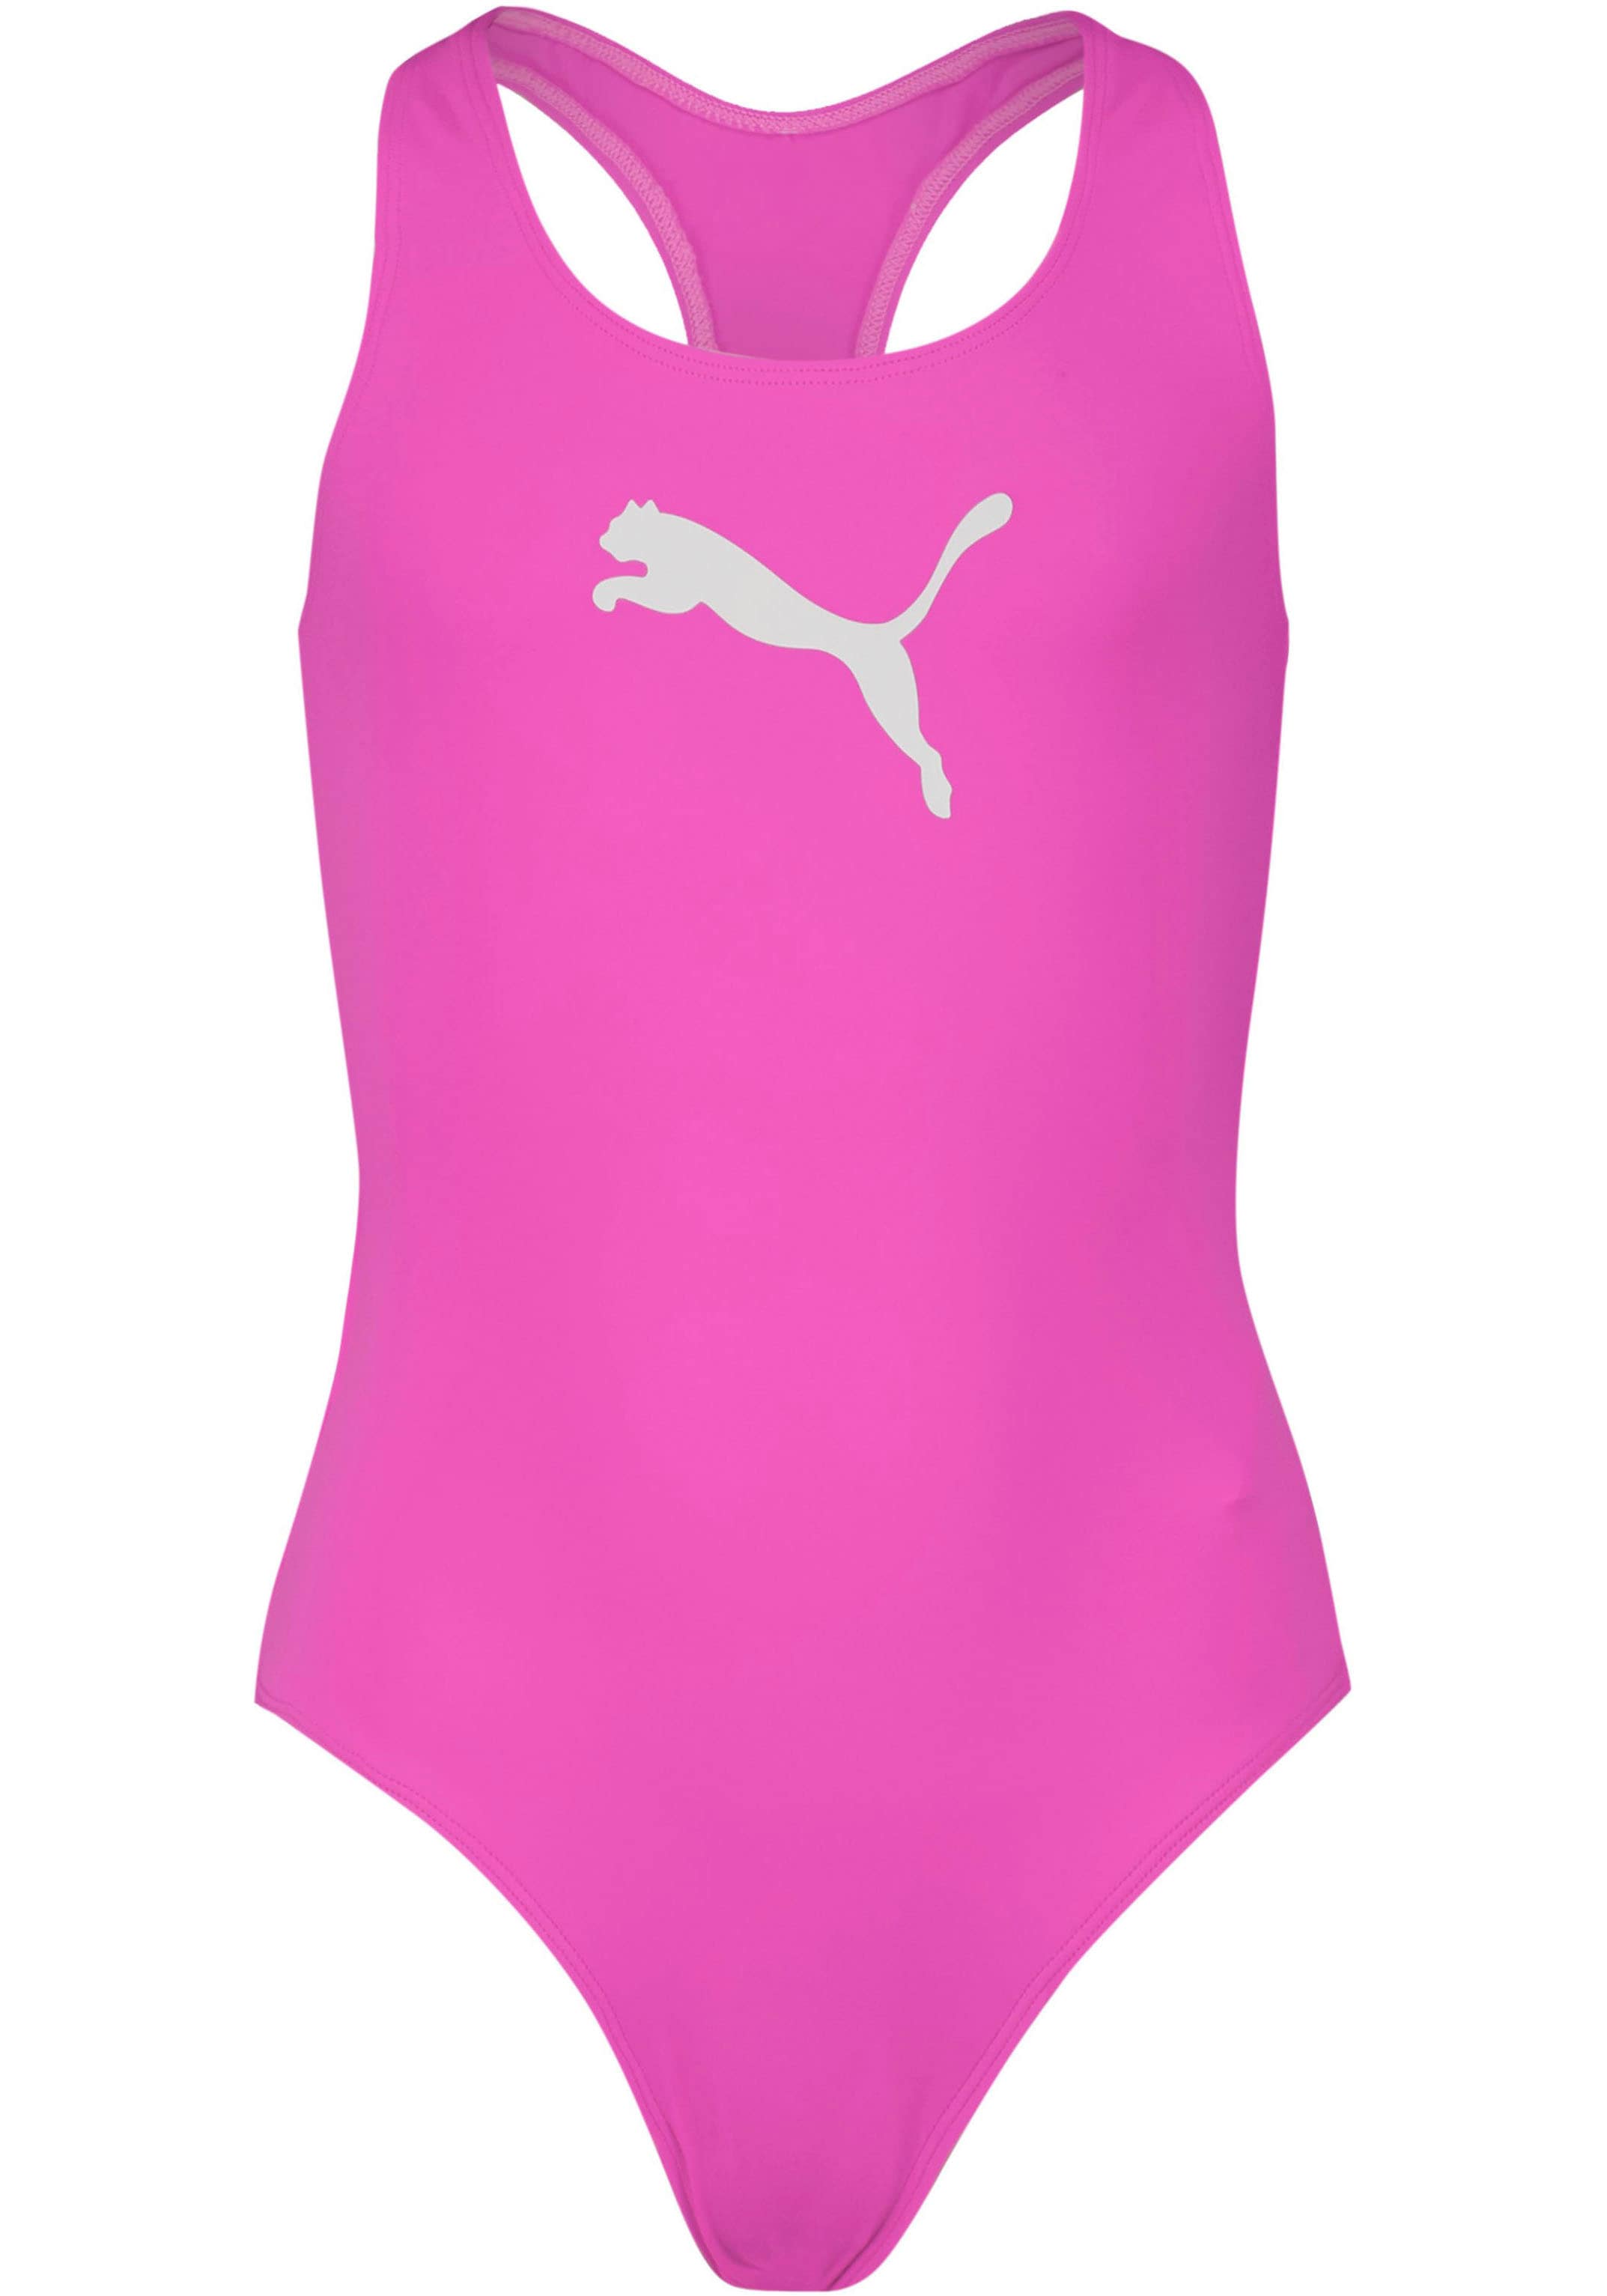 Badeanzug, Mädchen-Schwimmanzug in Racerback-Passform